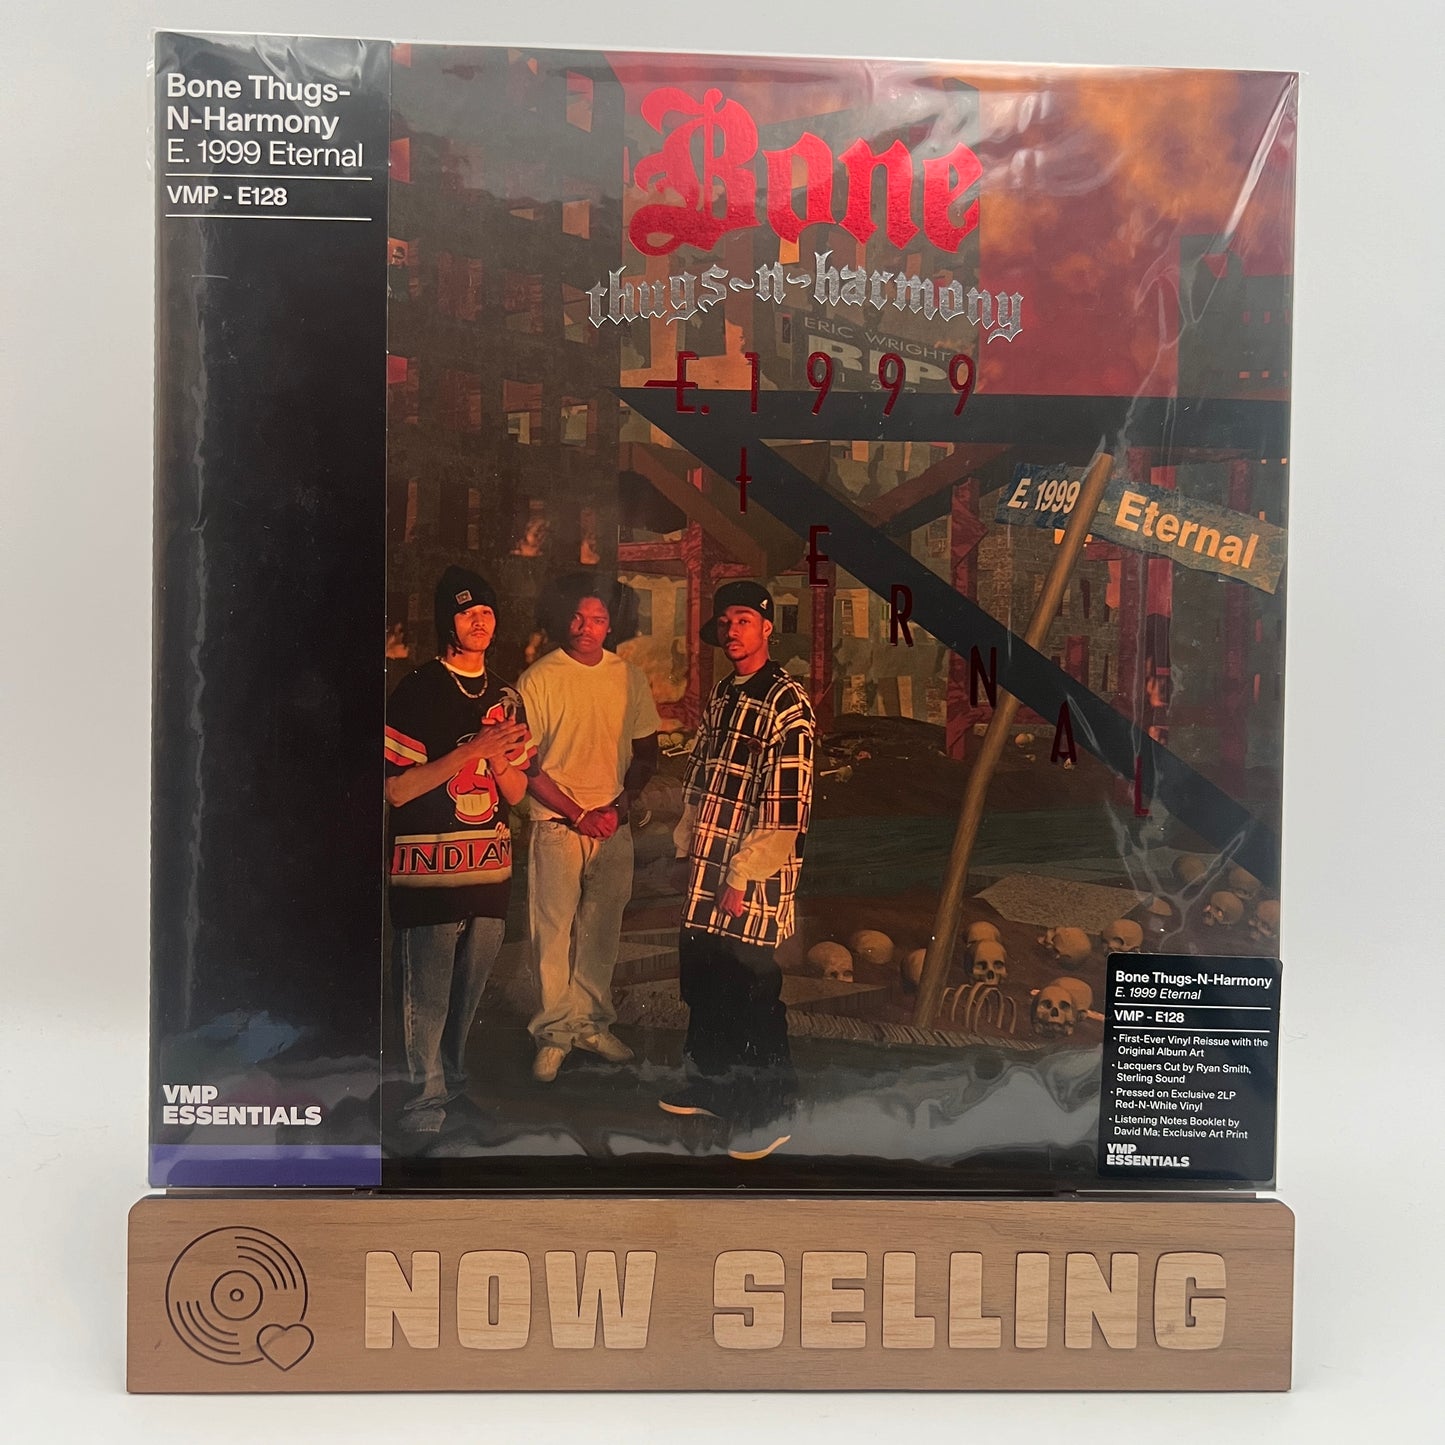 Bone Thugs-N-Harmony - E. 1999 Eternal Vinyl LP Reissue Red & White VinylMePlease